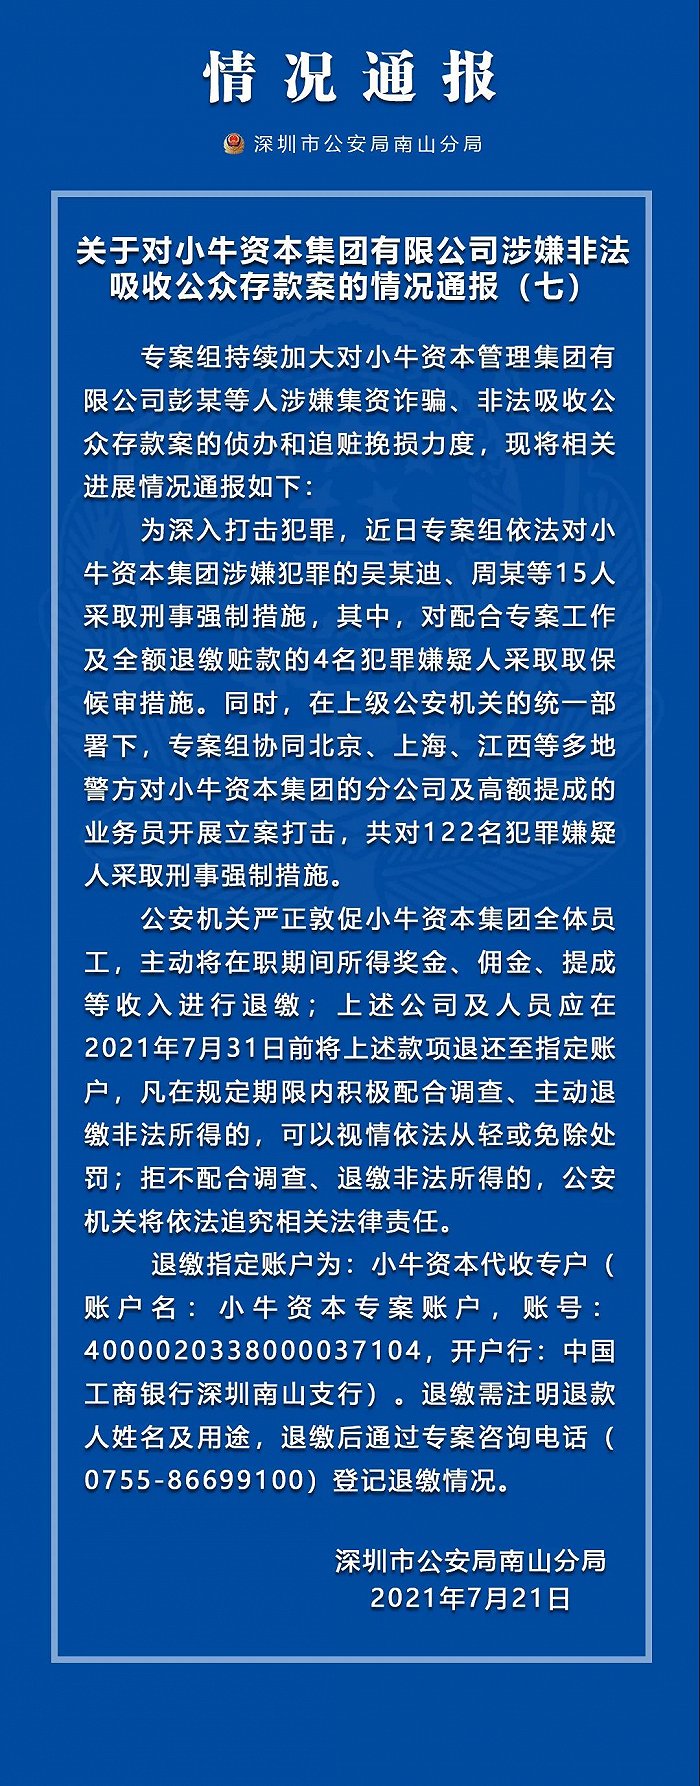 深圳警方再通报“小牛资本集团涉嫌非法吸收公众存款案”：已对吴某迪、周某等15人采取刑事强制措施